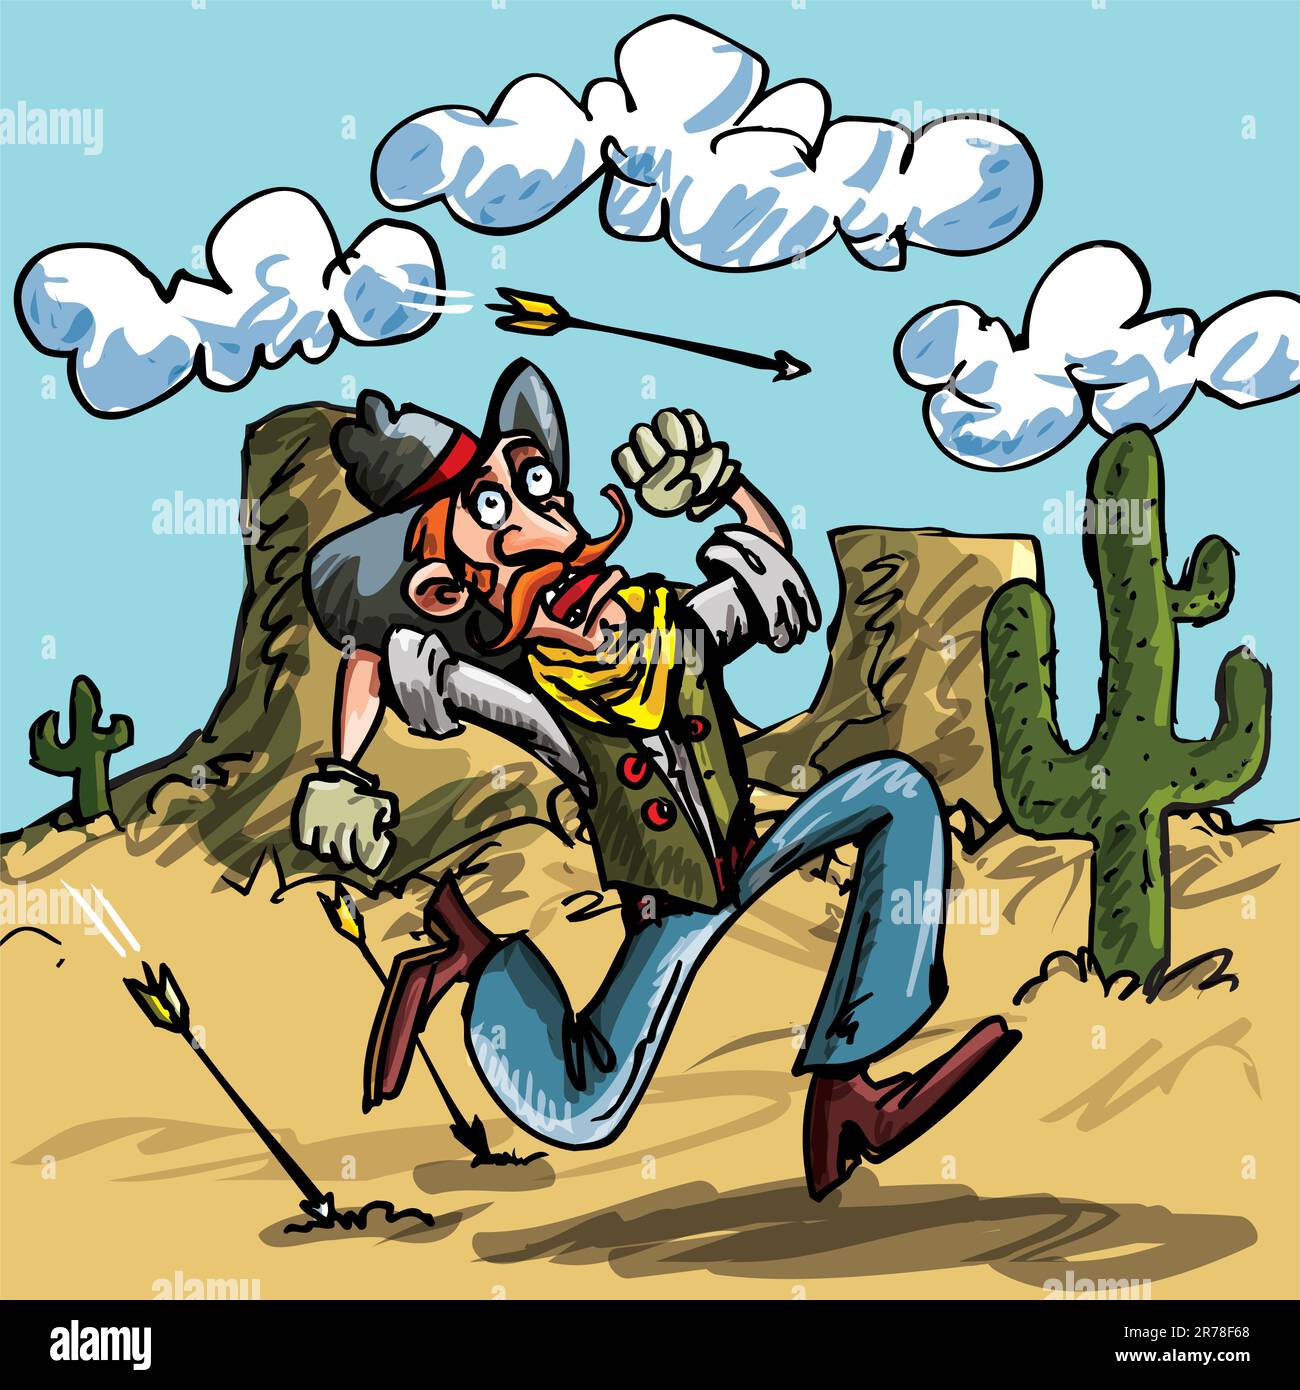 Cowboy dei cartoni animati che corre dalle frecce indiane. E' nel deserto, c'e' un cactus dietro di lui Illustrazione Vettoriale